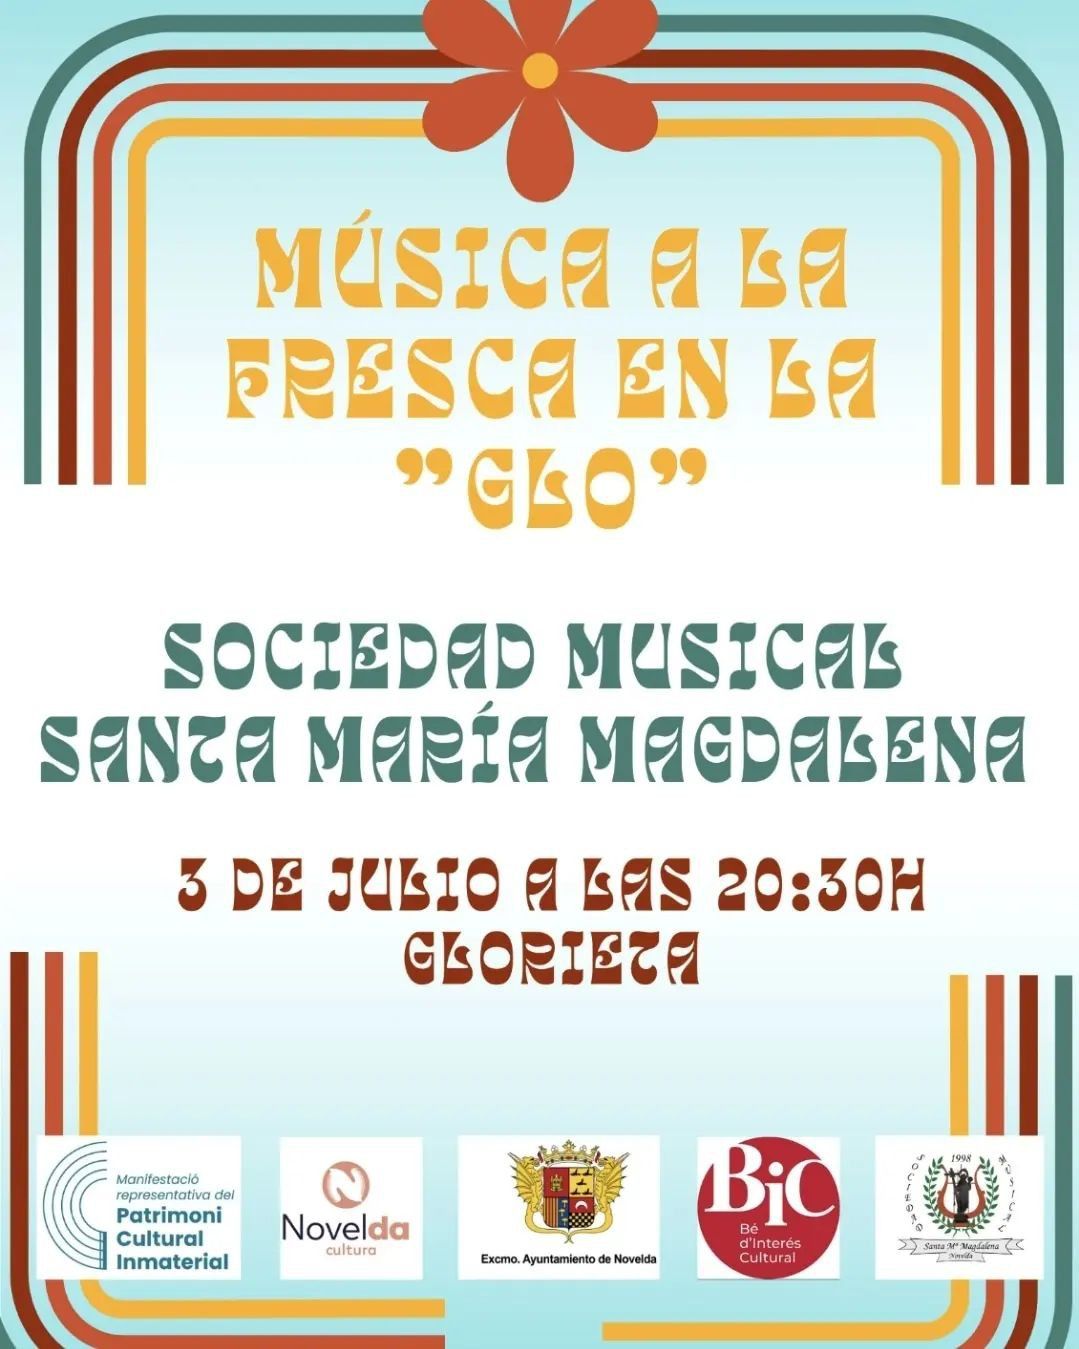 Ayuntamiento de Novelda Concierto Música a la fresca en la ''Glo'' de la Sociedad Musical Santa Mª Magdalena 